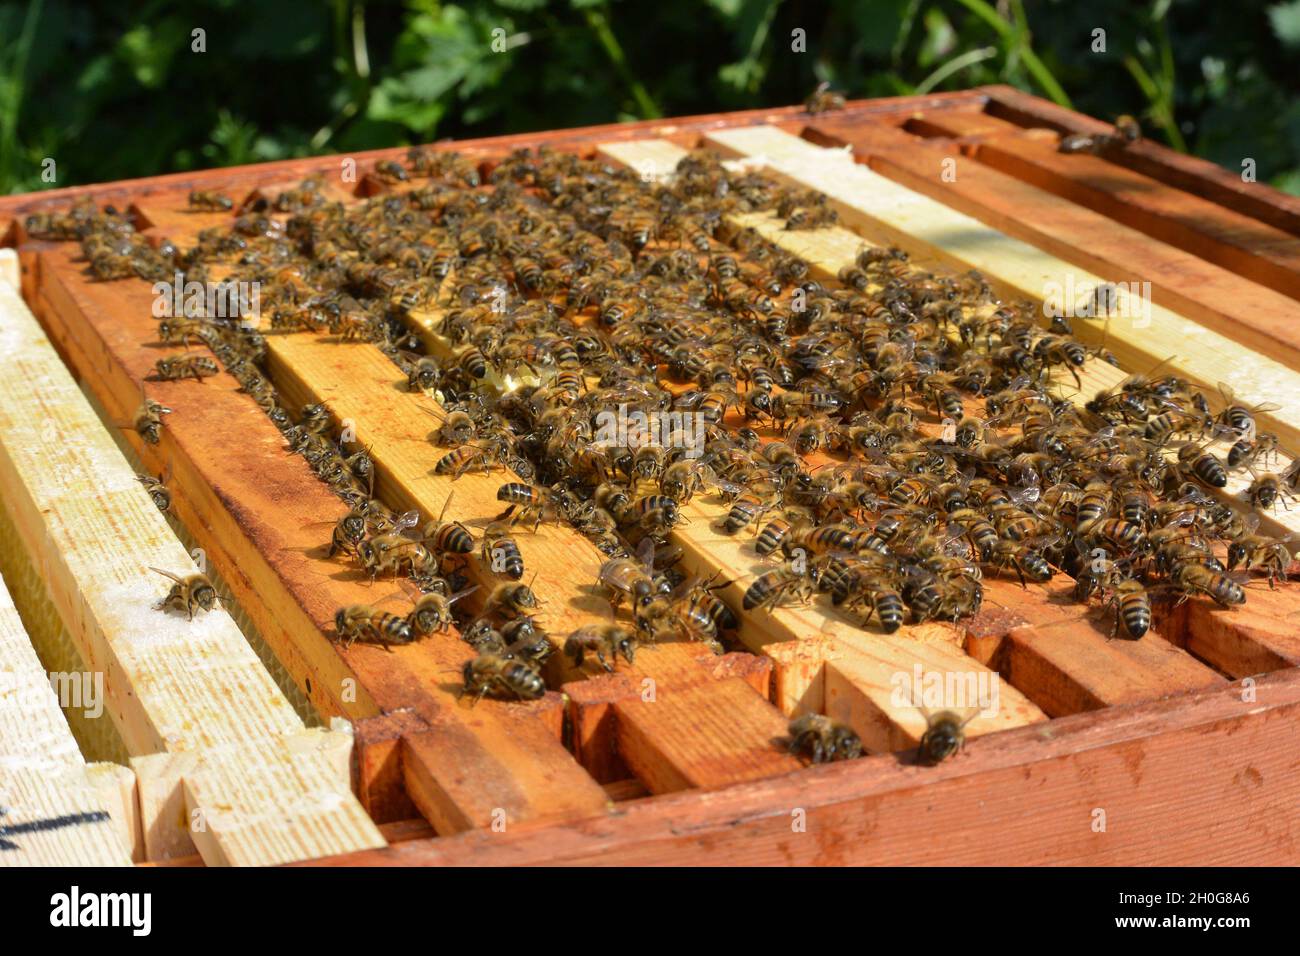 Levantar la tapa de una colmena para ver abejas obreras (Apis mellifera) en los bordes y entre los marcos paralelos Foto de stock